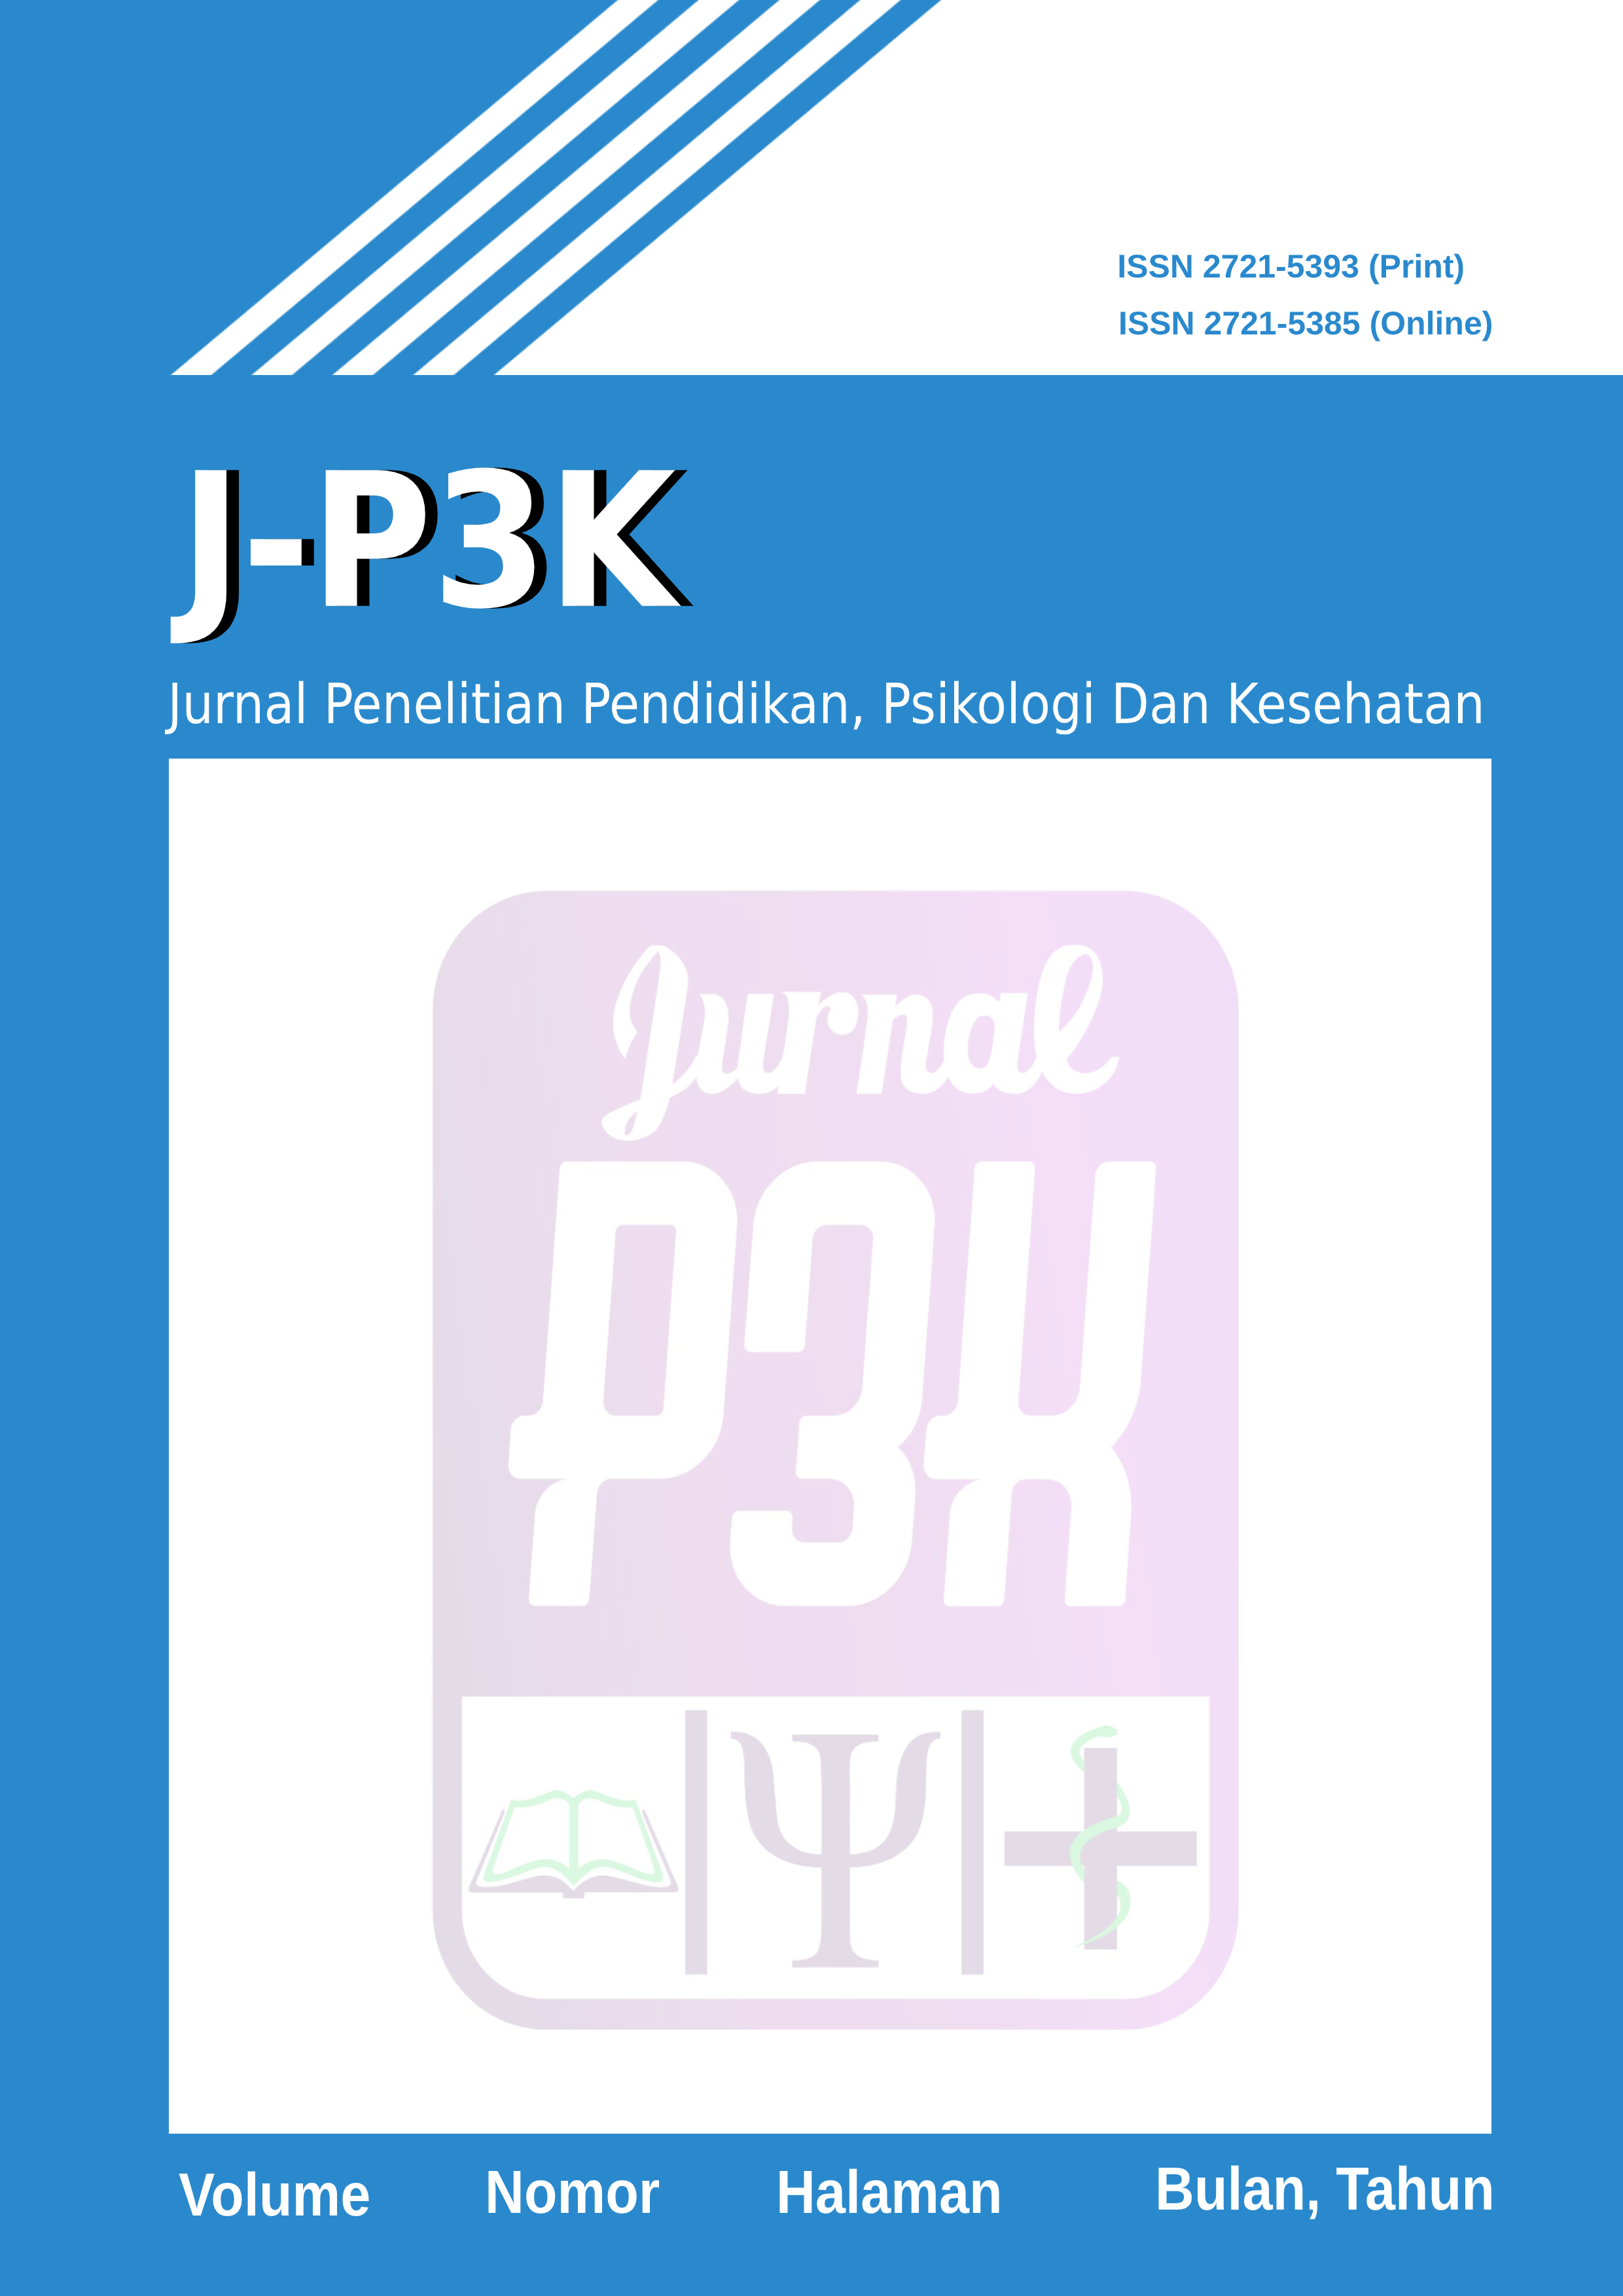 JURNAL PENELITIAN PENDIDIKAN, PSIKOLOGI DAN KESEHATAN (J-P3K)